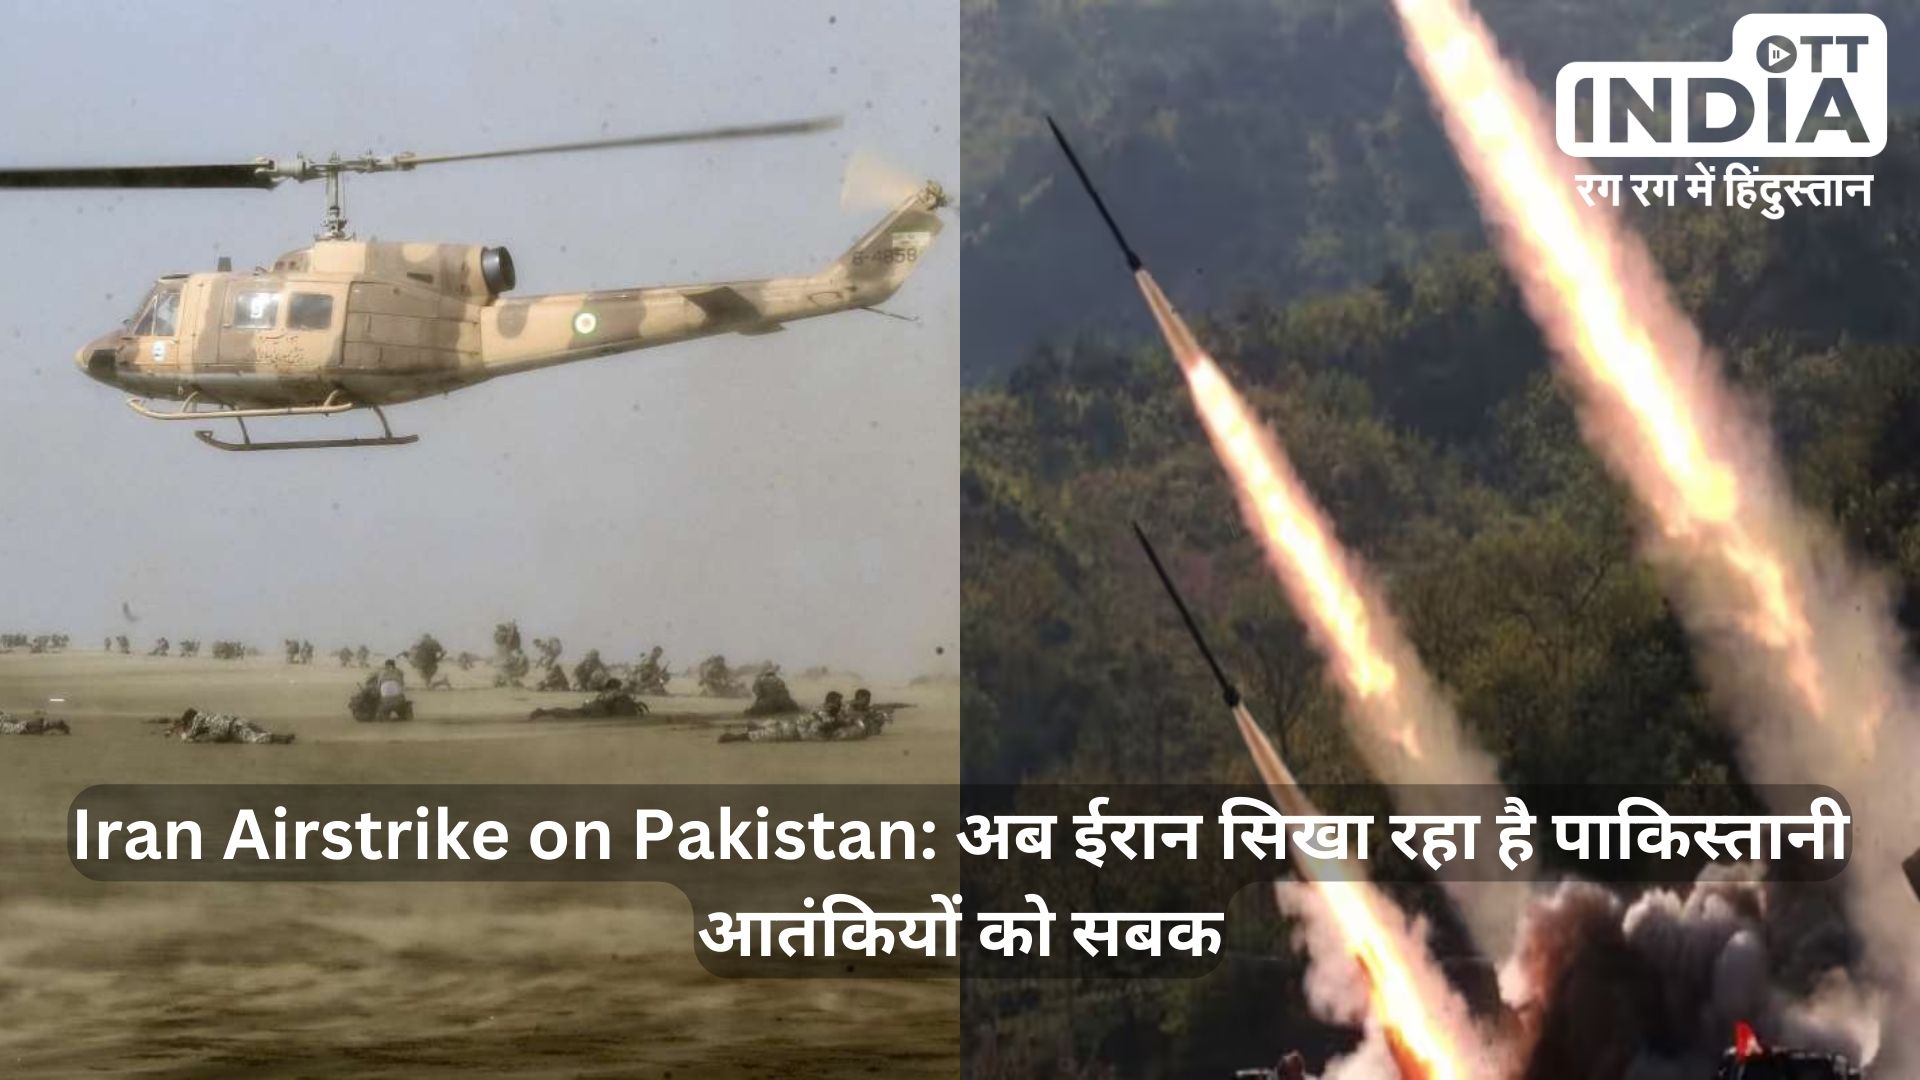 Iran Airstrike on Pakistan: कई चेतावनियों के बाद ईरान ने कर दिया पाकिस्तान पर हमला